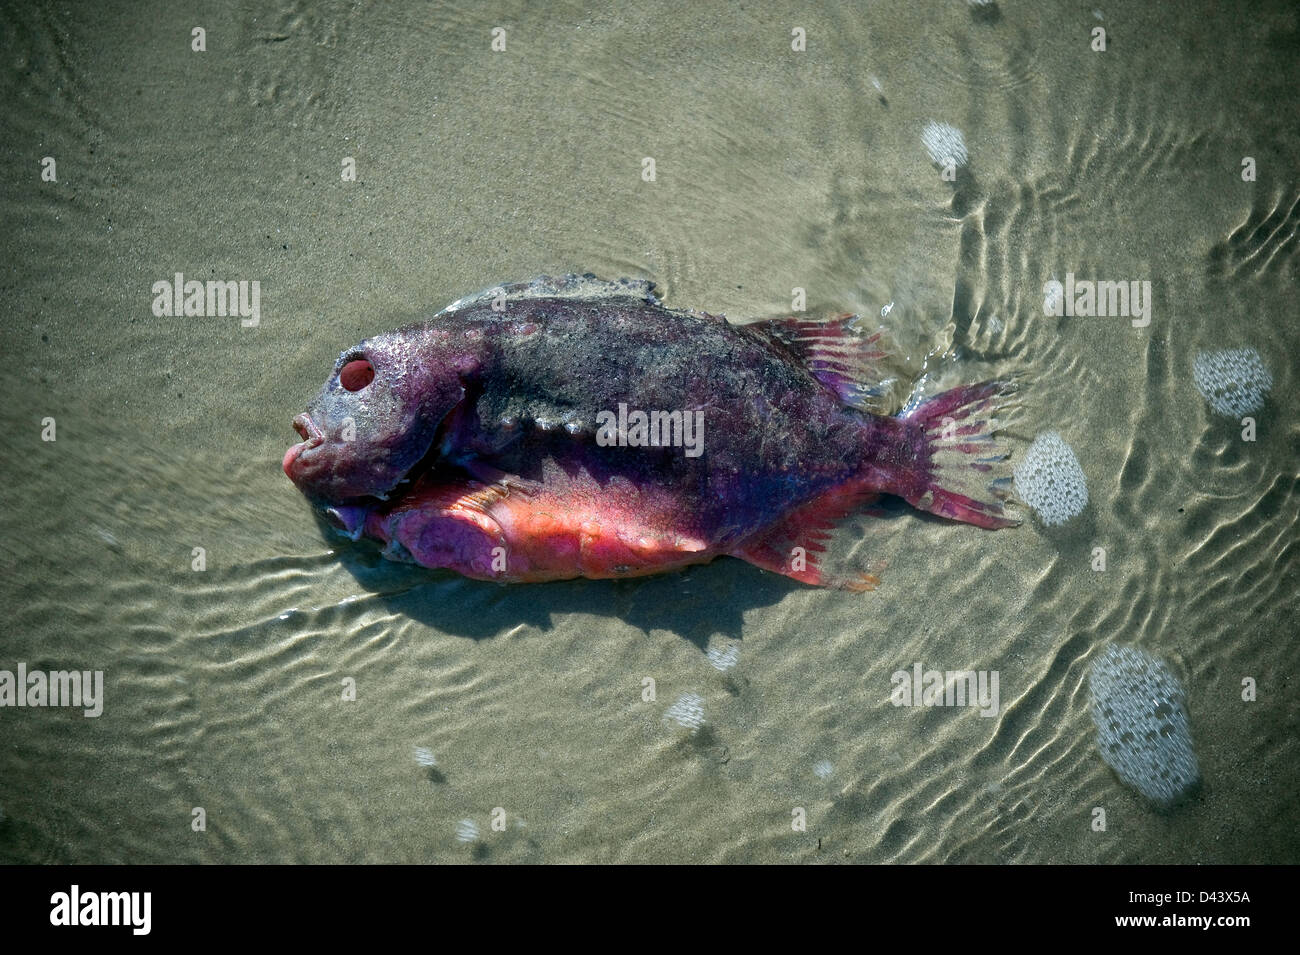 Strange fish washed up on Worthing beach, West Sussex, UK Stock Photo